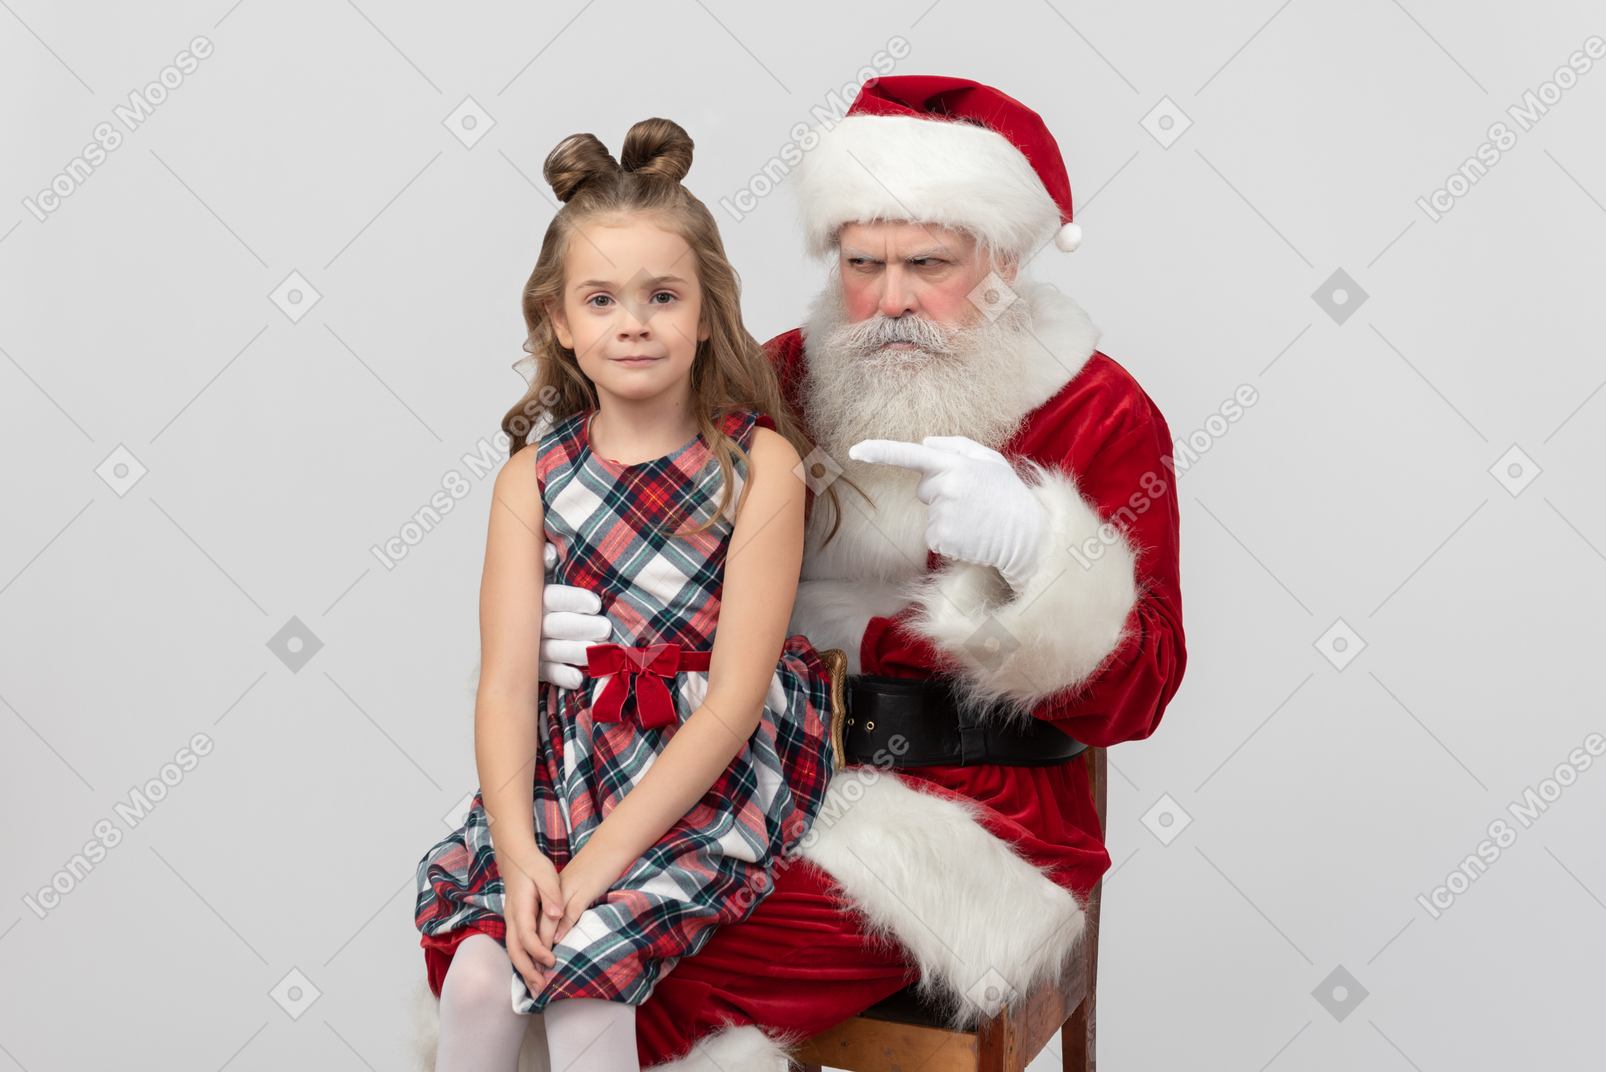 Don't say that santa's not real, kid